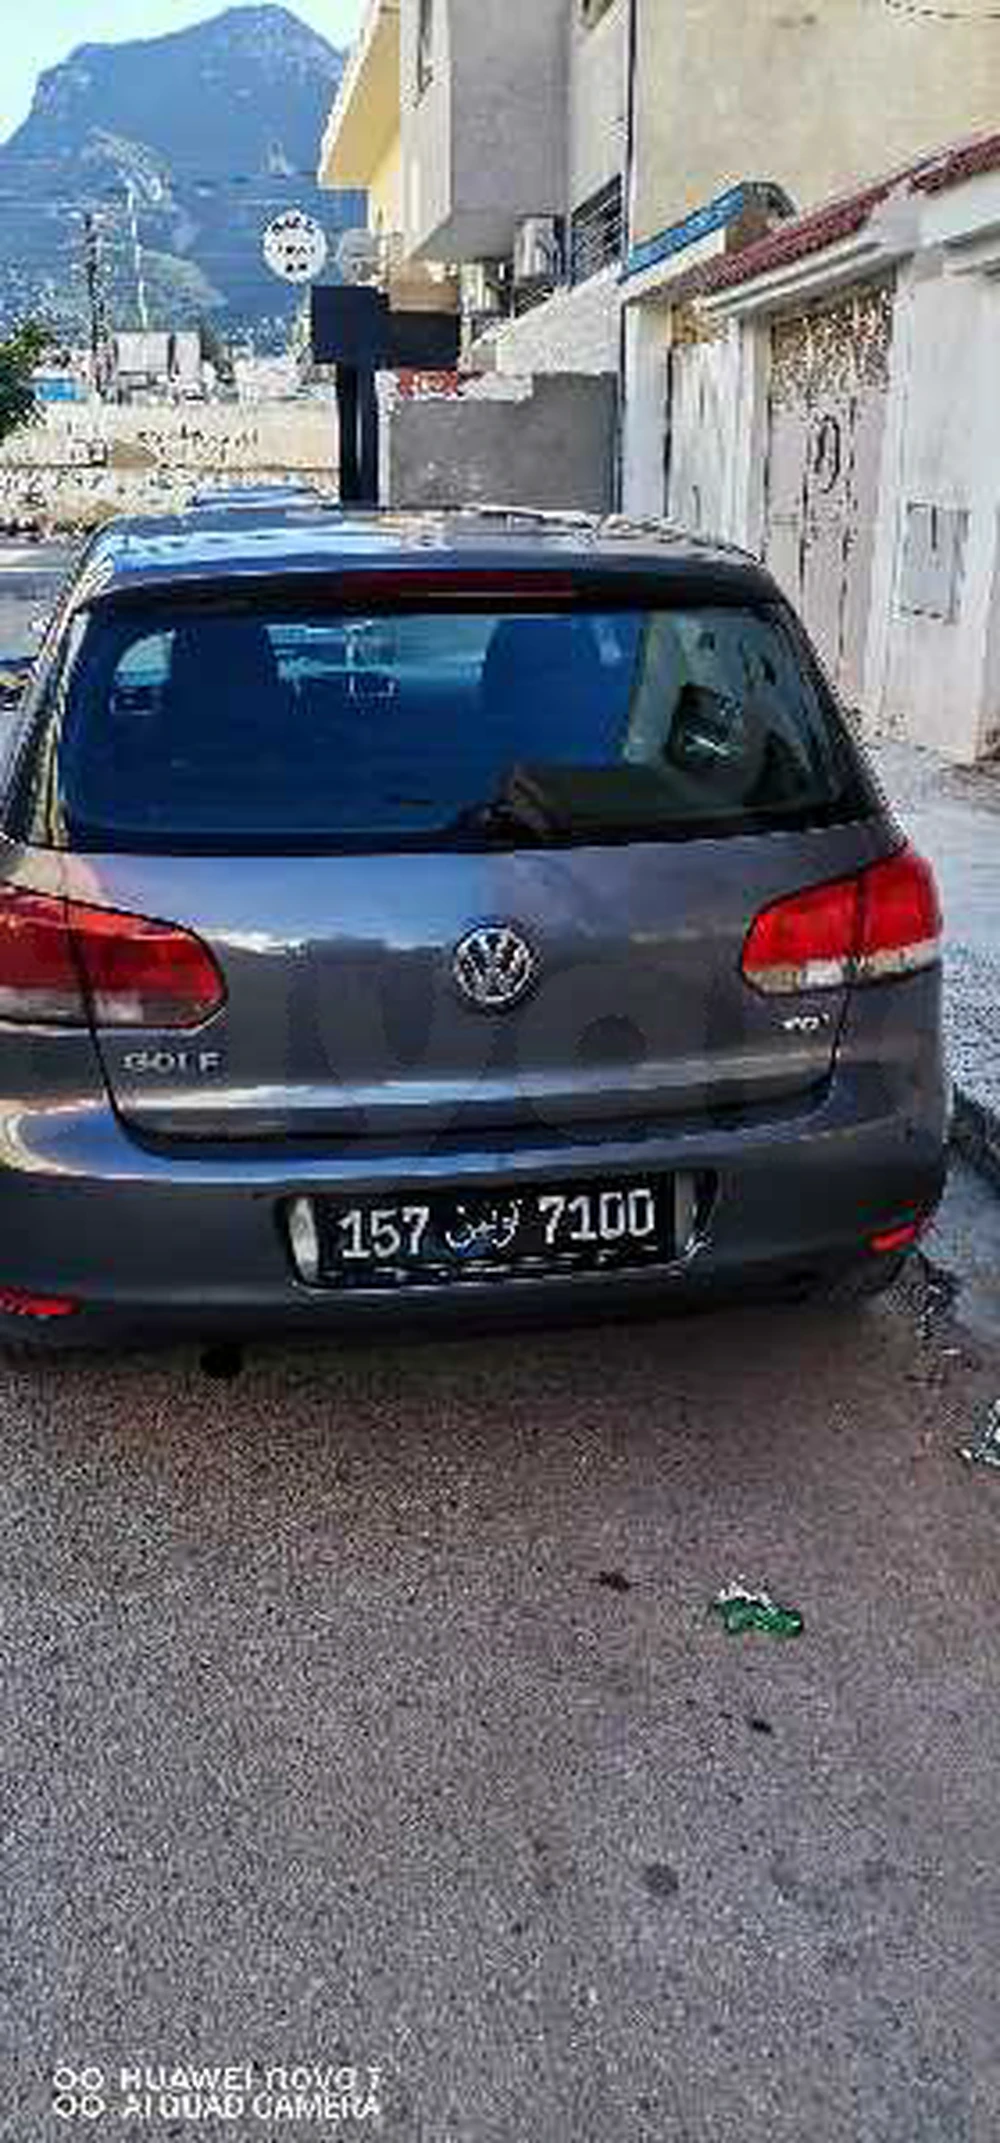 Carte voiture Volkswagen Golf 6